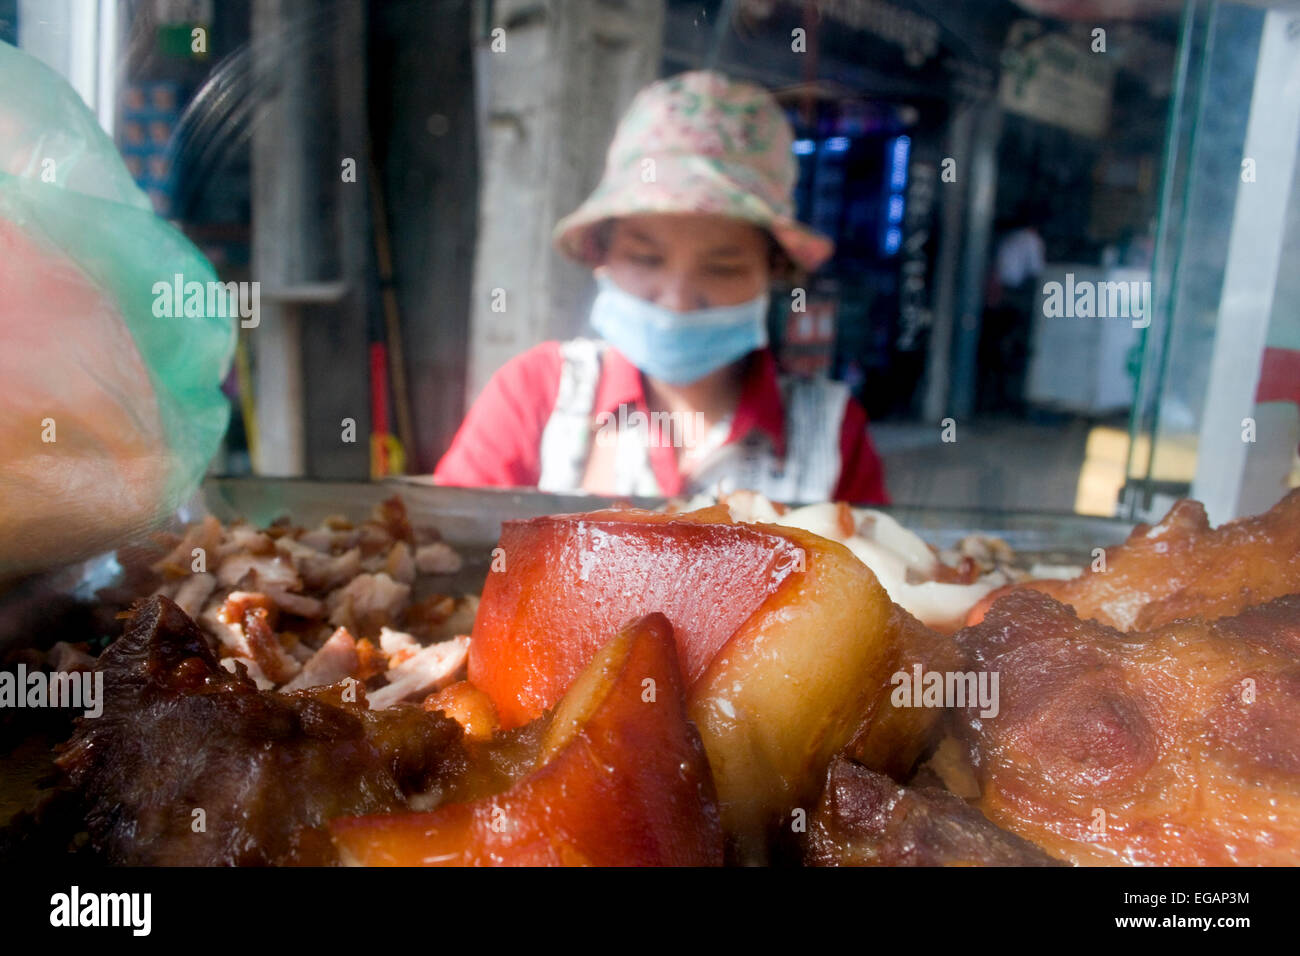 Eine Frau macht Schinkensemmeln, die sie als Straße Nahrung von einem mobilen Lebensmittel Karren auf eine Stadt in Kampong Cham, Kambodscha Straße verkauft. Stockfoto